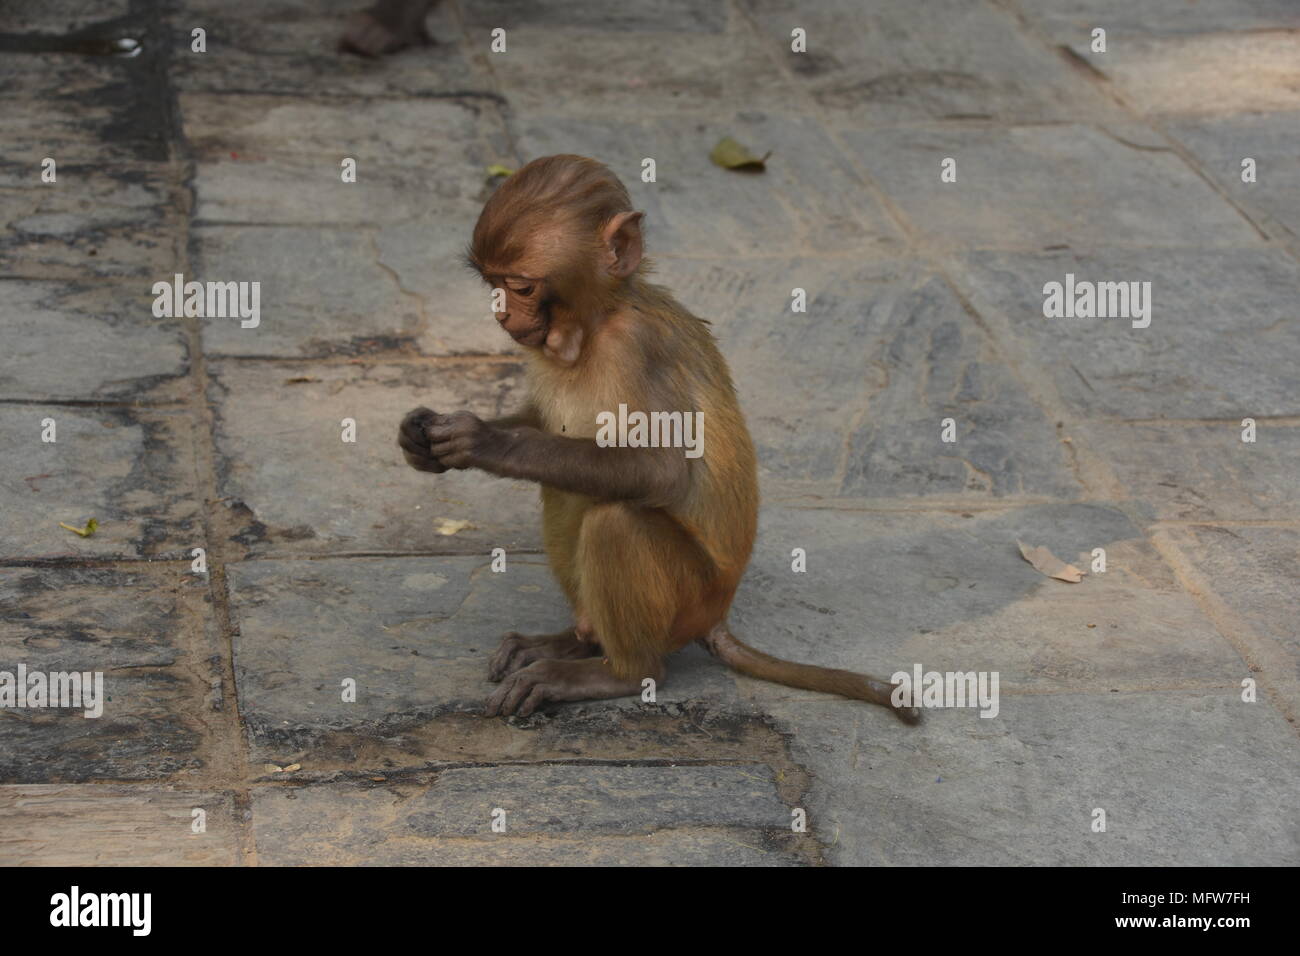 Little monkey sitting on the ground of Swayambhunath Stupa, Kathmandu, Nepal Stock Photo